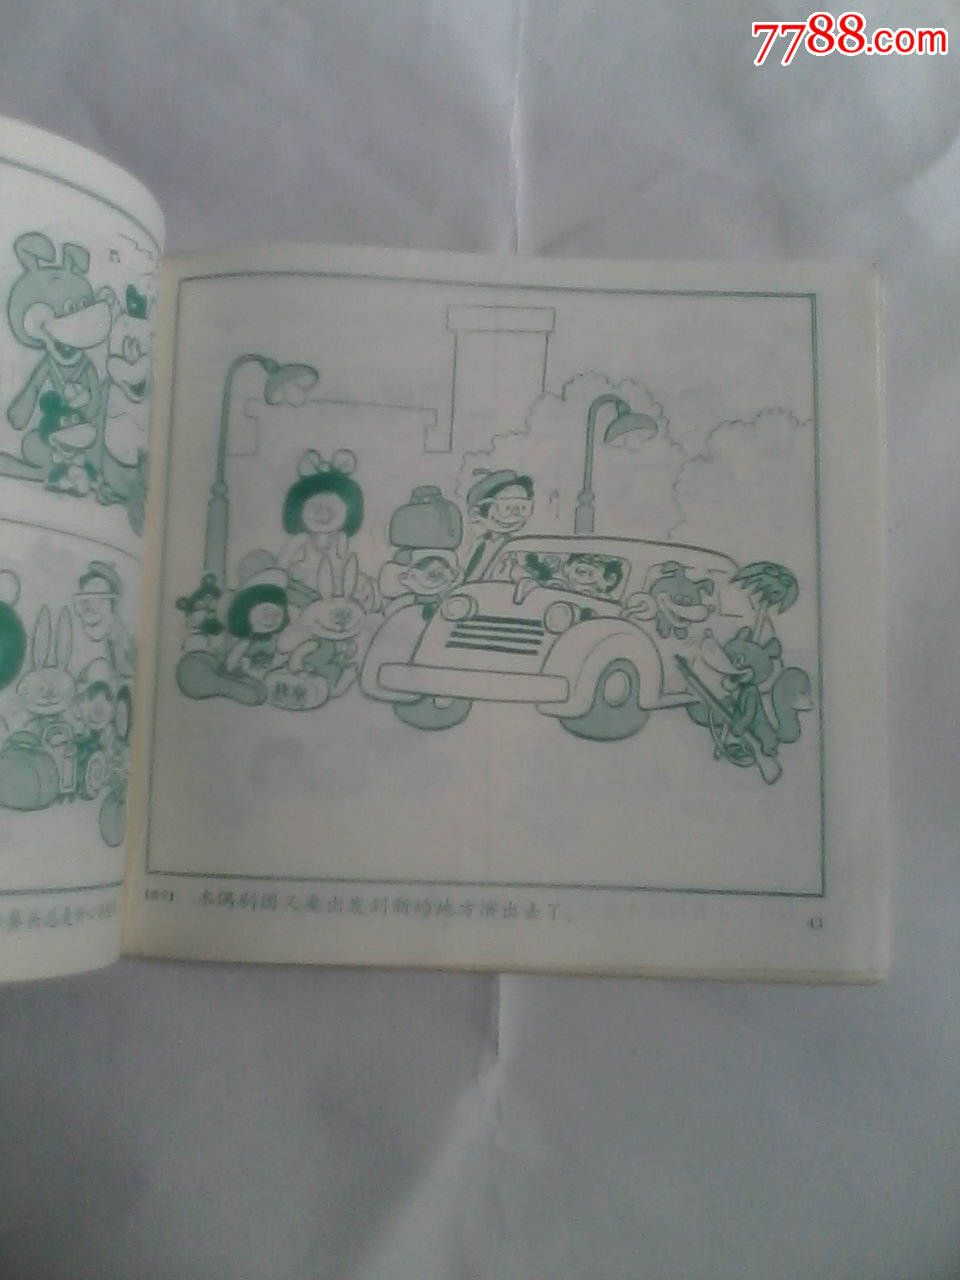 小圆帽和白鼻头,连环画\/小人书,八十年代(20世